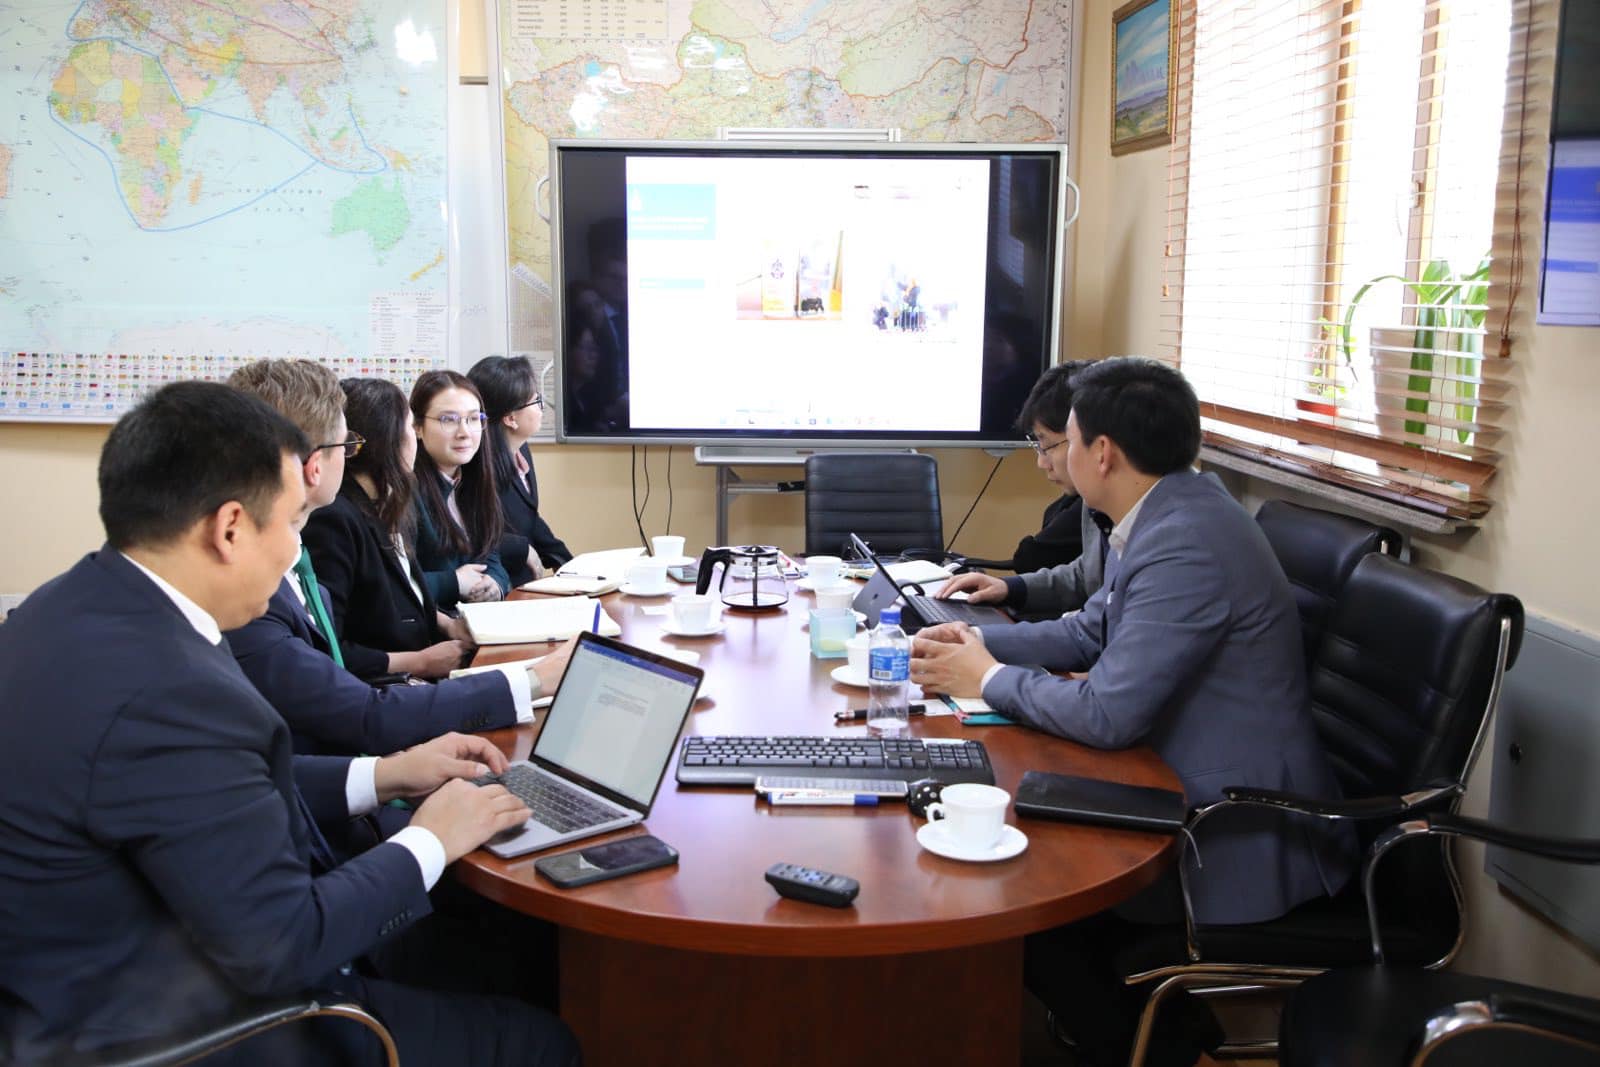 Дэлхийн оюуны өмчийн байгууллагын үнэлгээний баг Монгол улсад ажиллаж байна